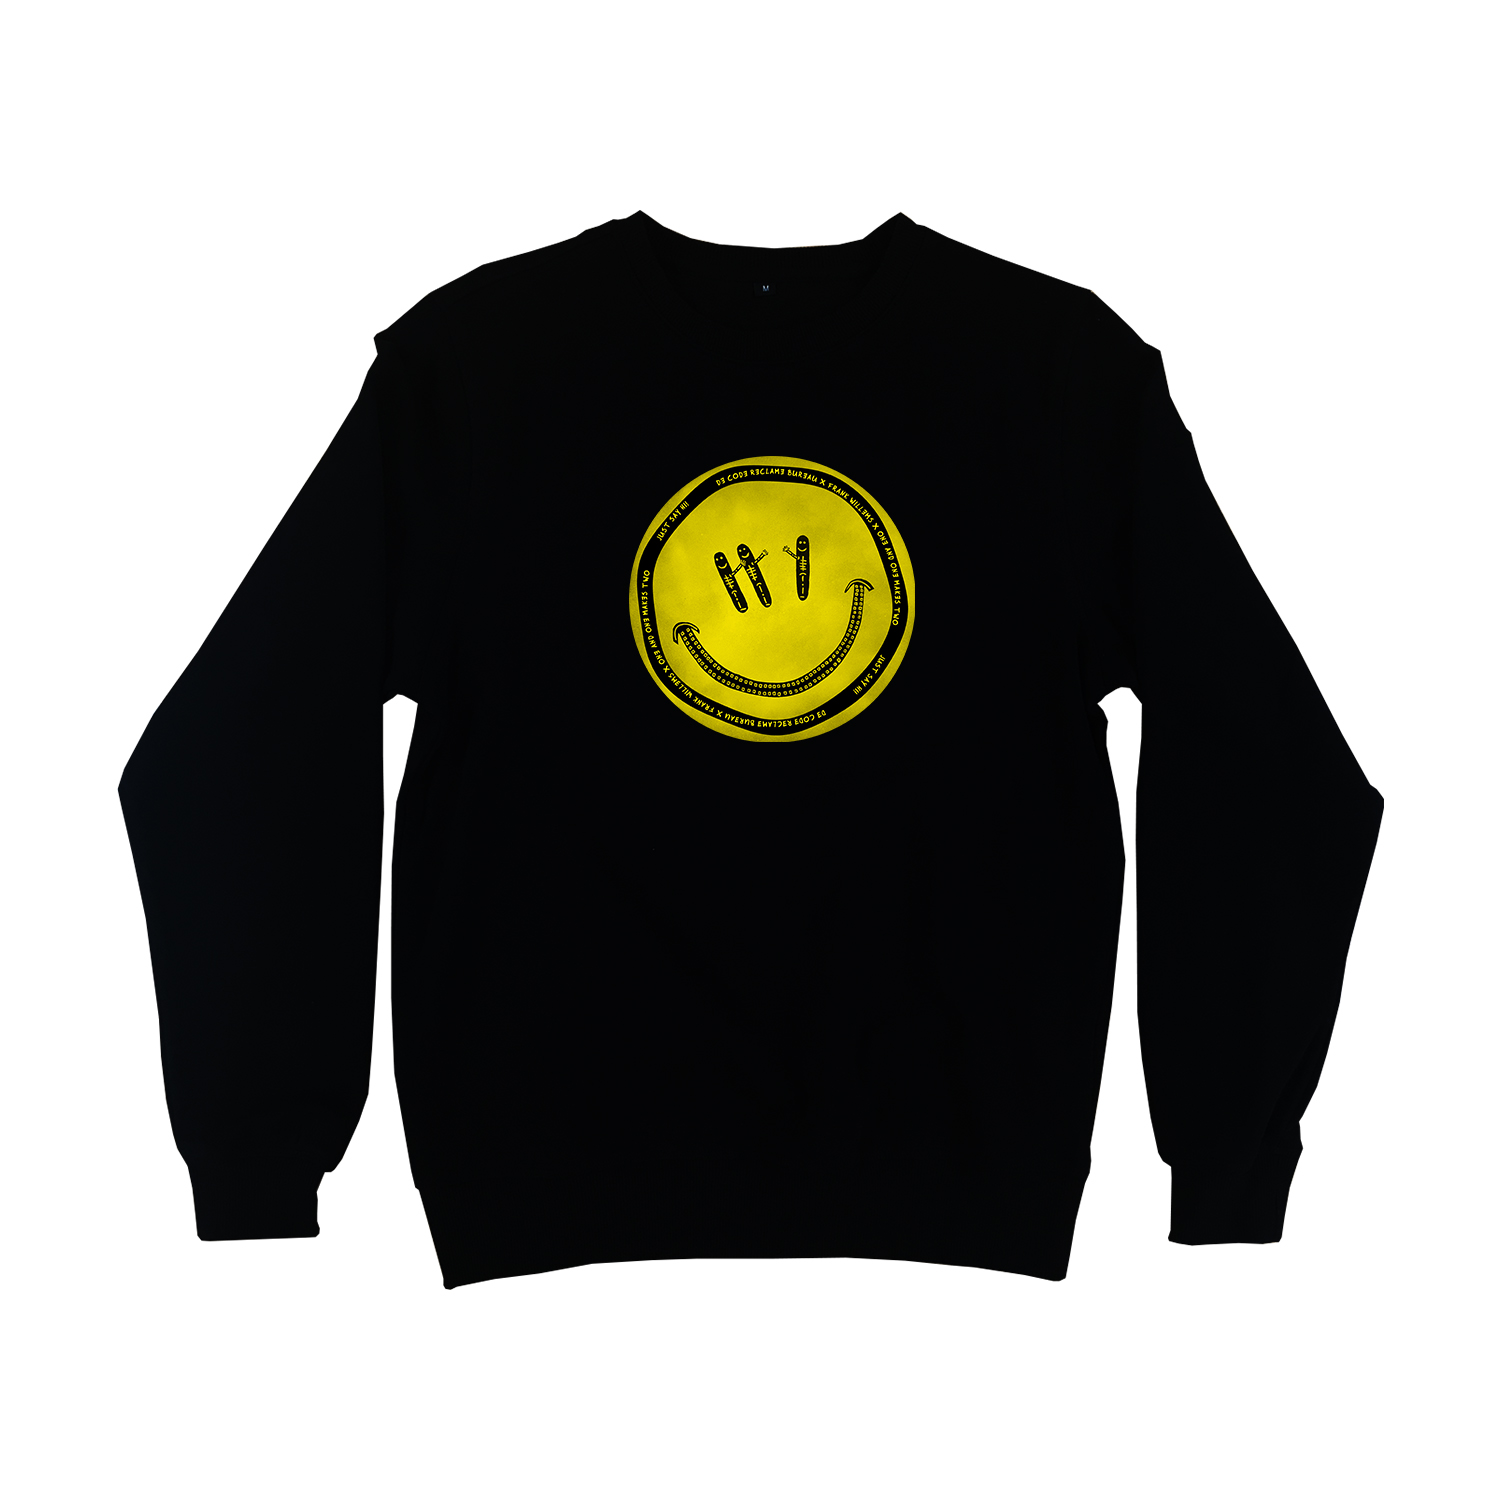 Sweater - JUST SAY HI! by De Code Reclamebureau x Frank Willems – zwart